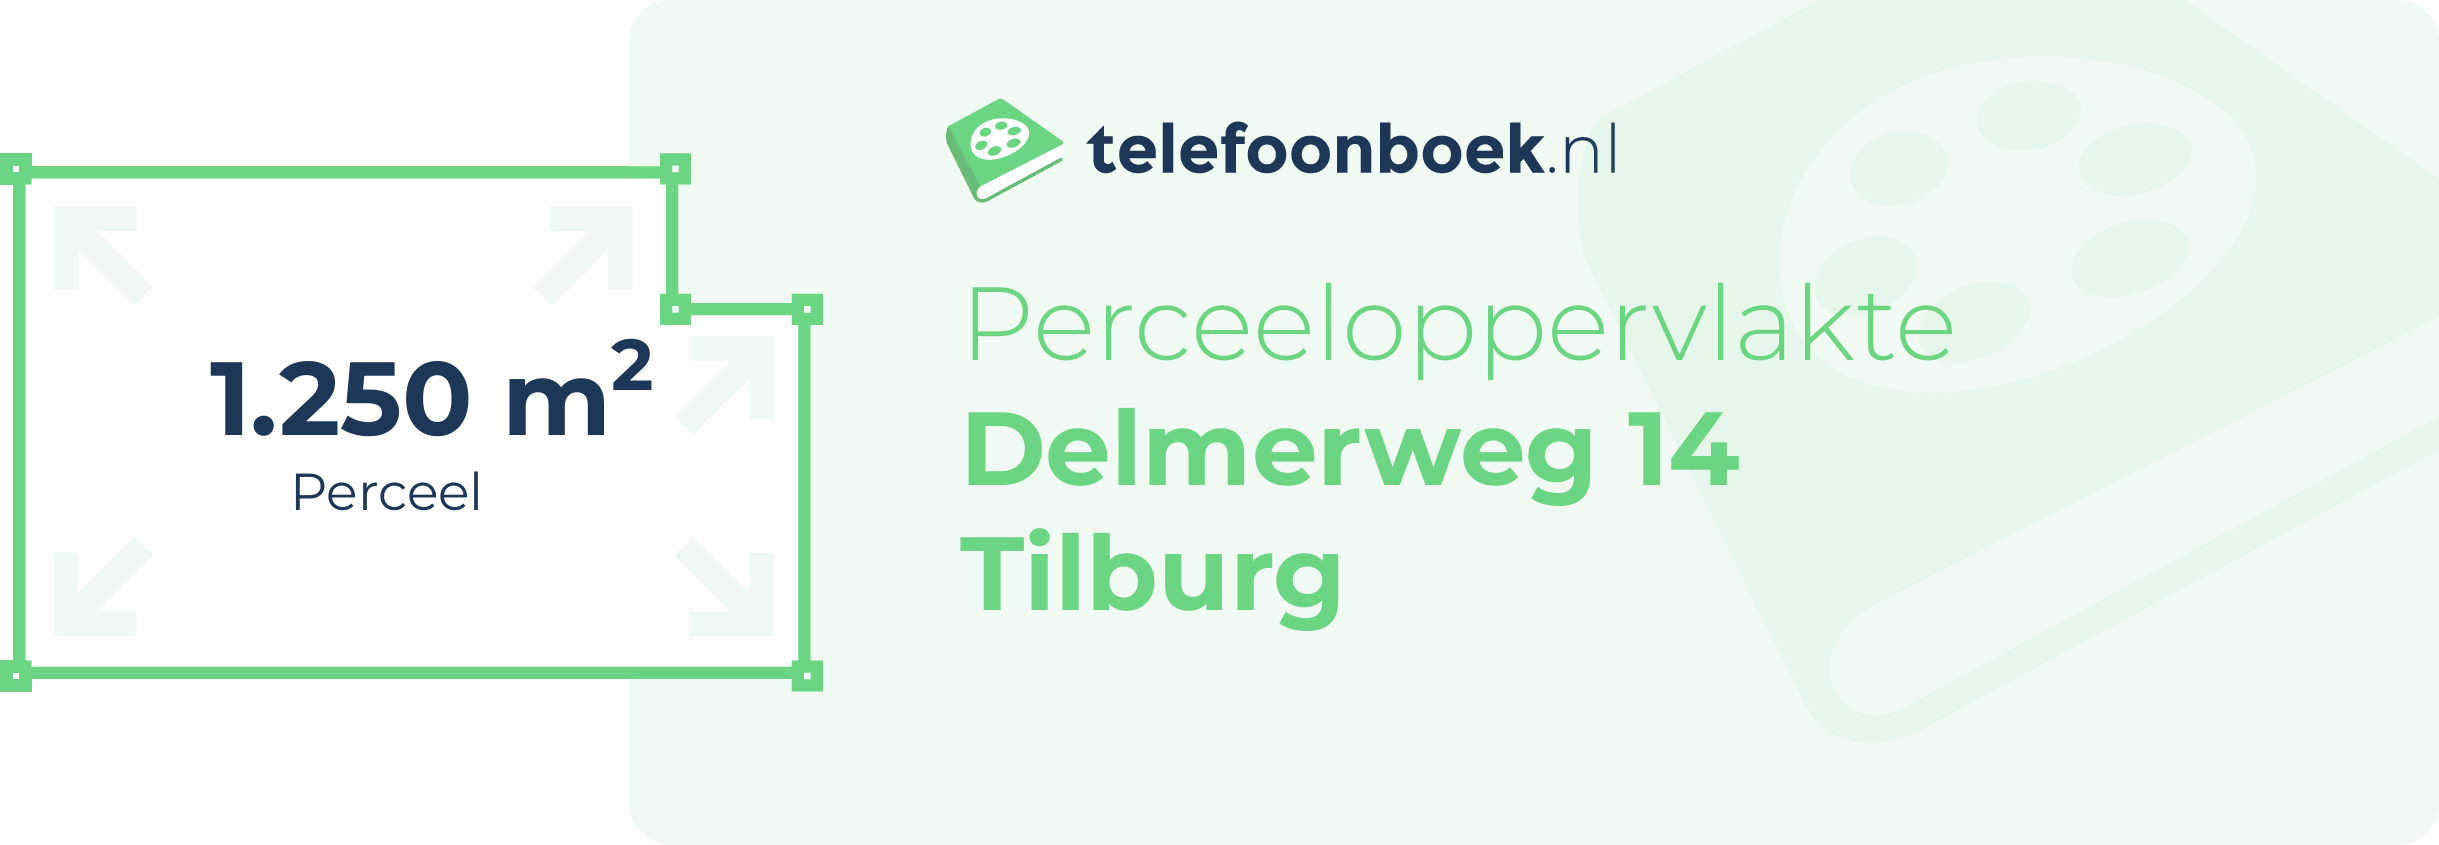 Perceeloppervlakte Delmerweg 14 Tilburg